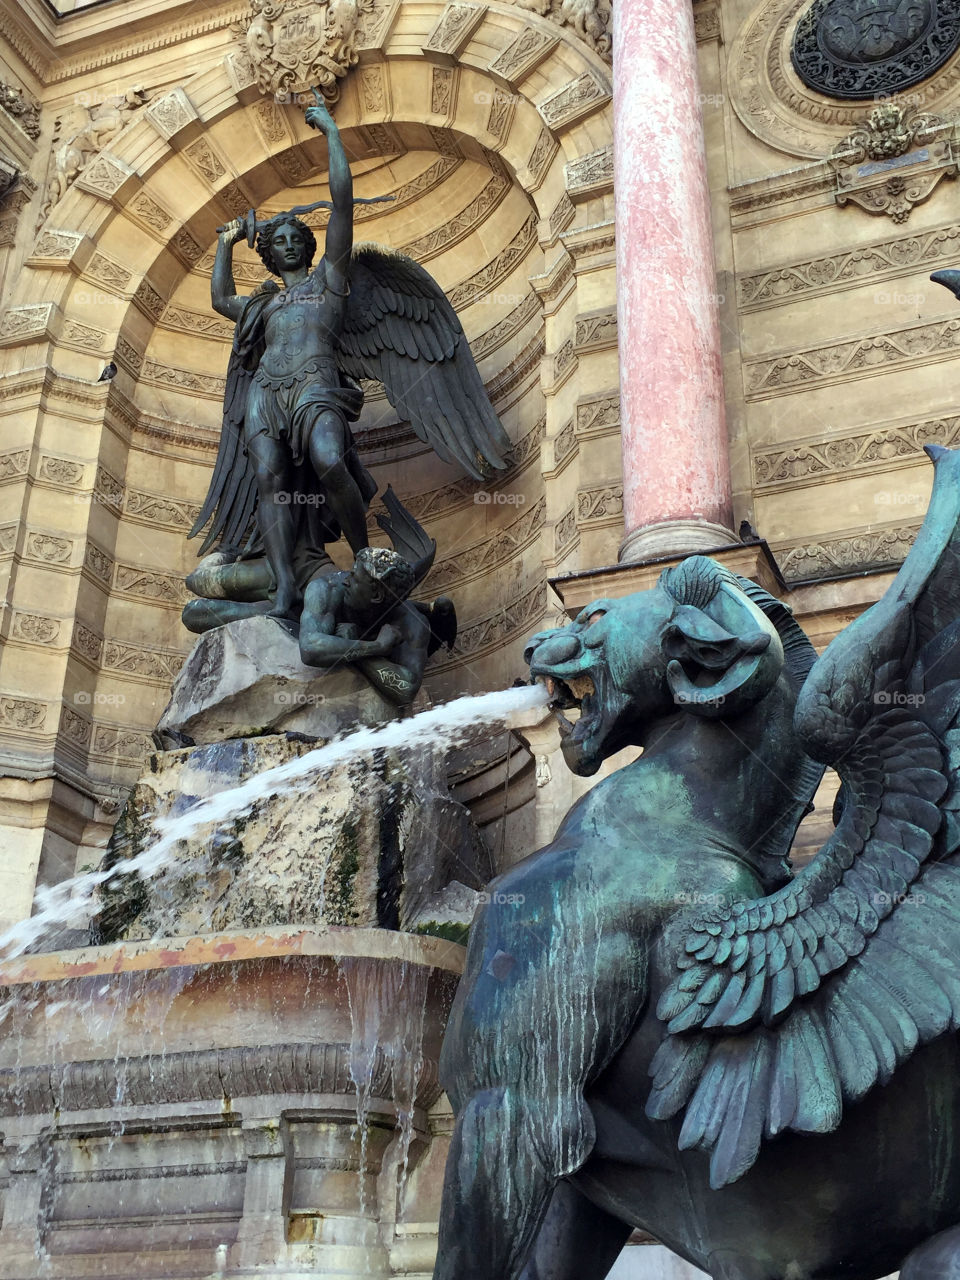 Fountain
Paris, France